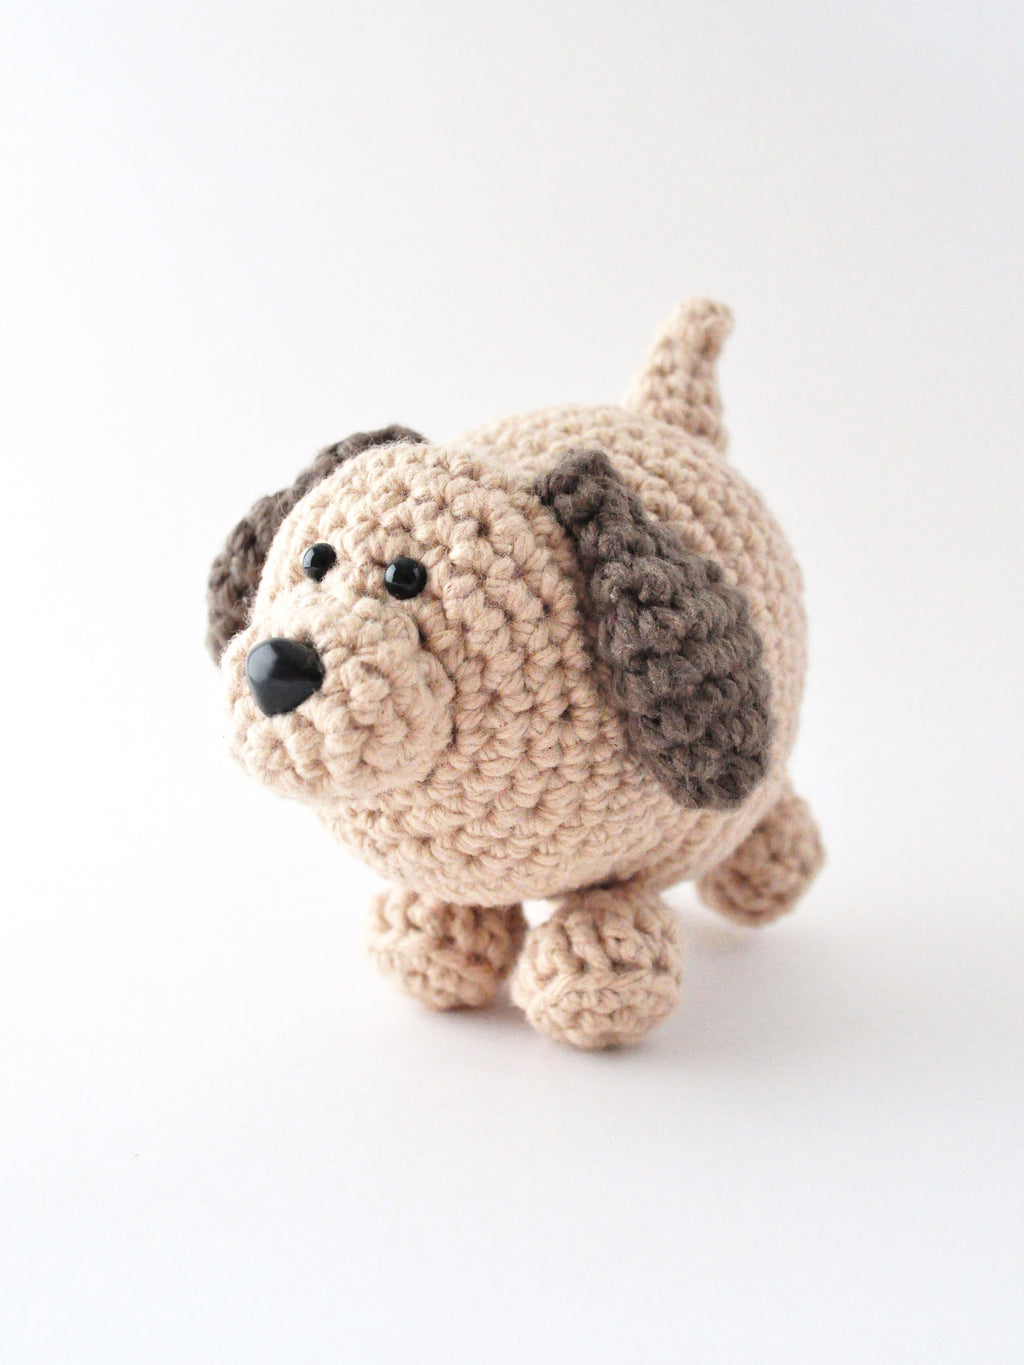 Little dog amigurumi pattern